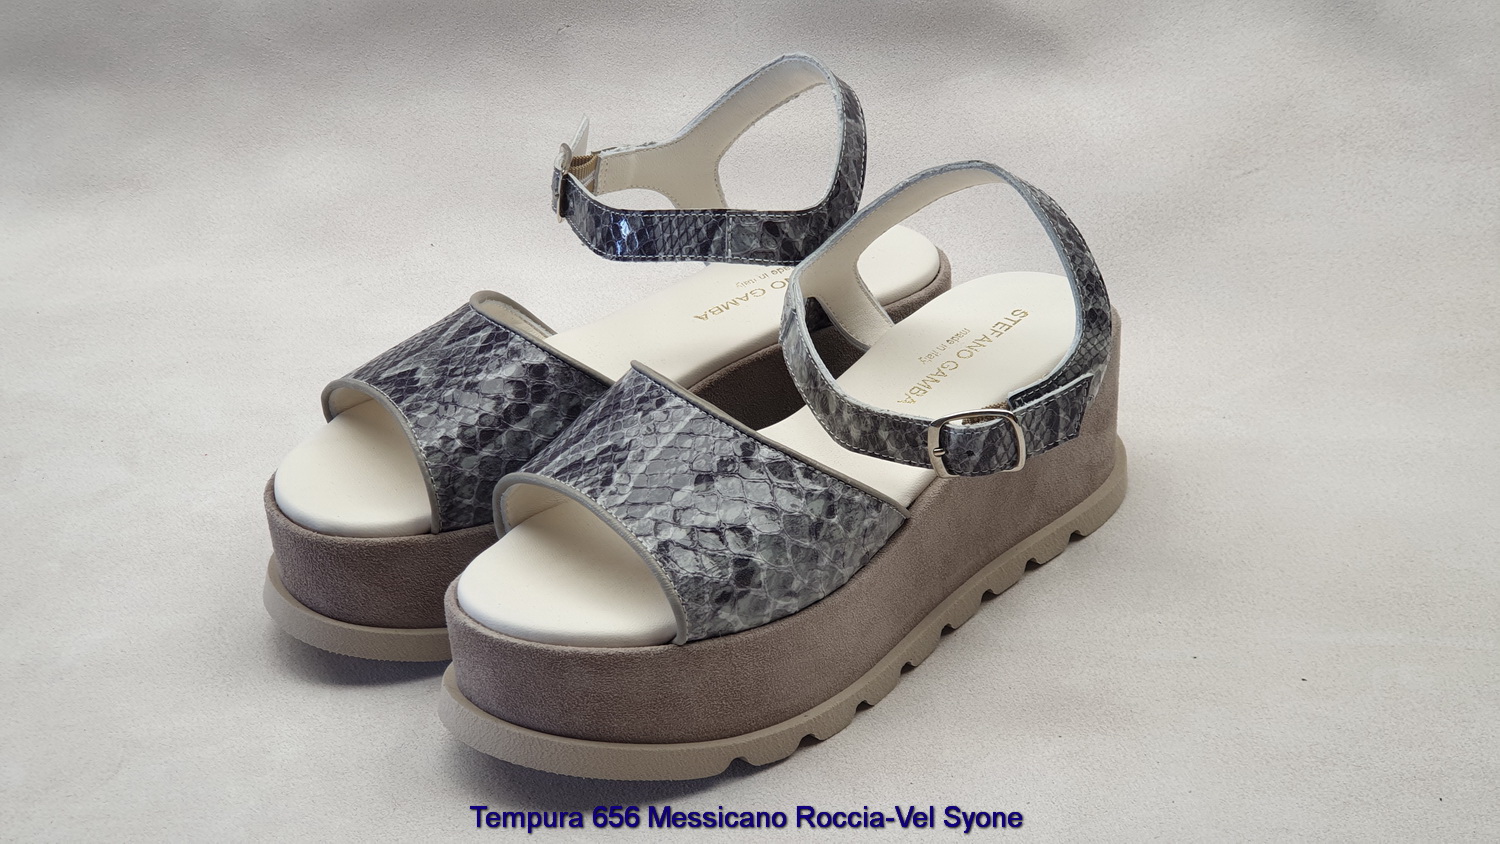 Tempura-656-Messicano-Roccia-Vel-Syone-